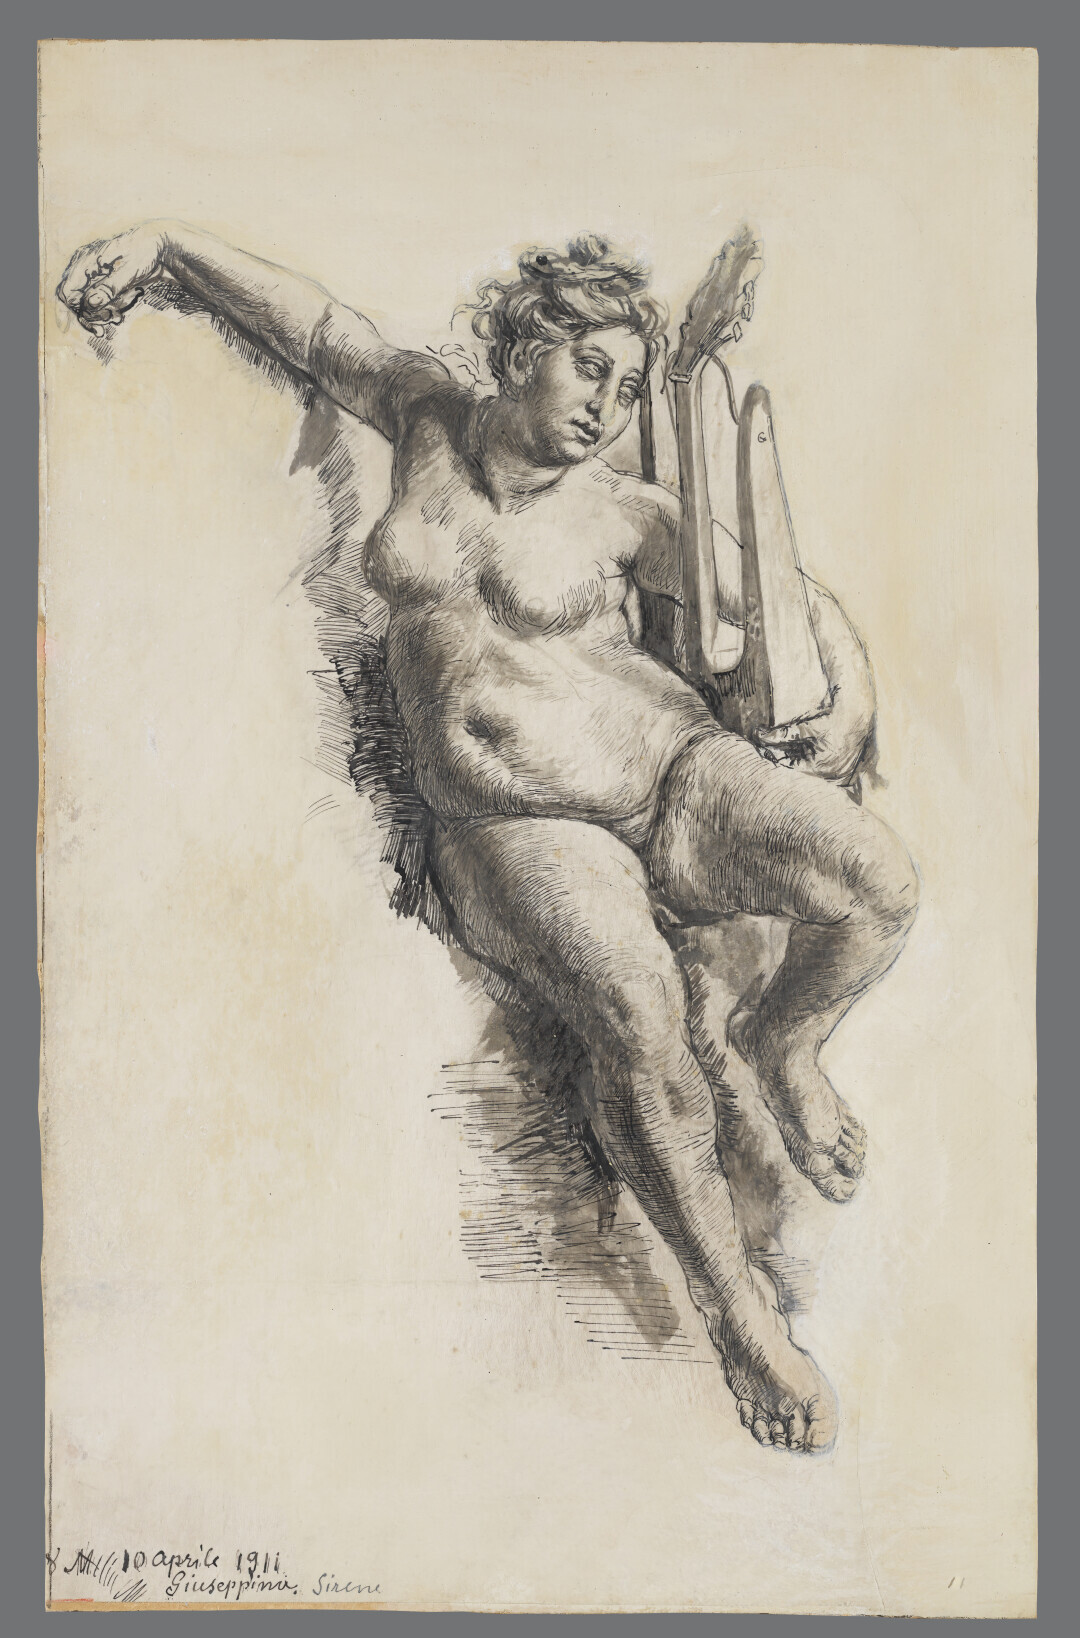 Nude of his Daughter Giuseppina as a Siren